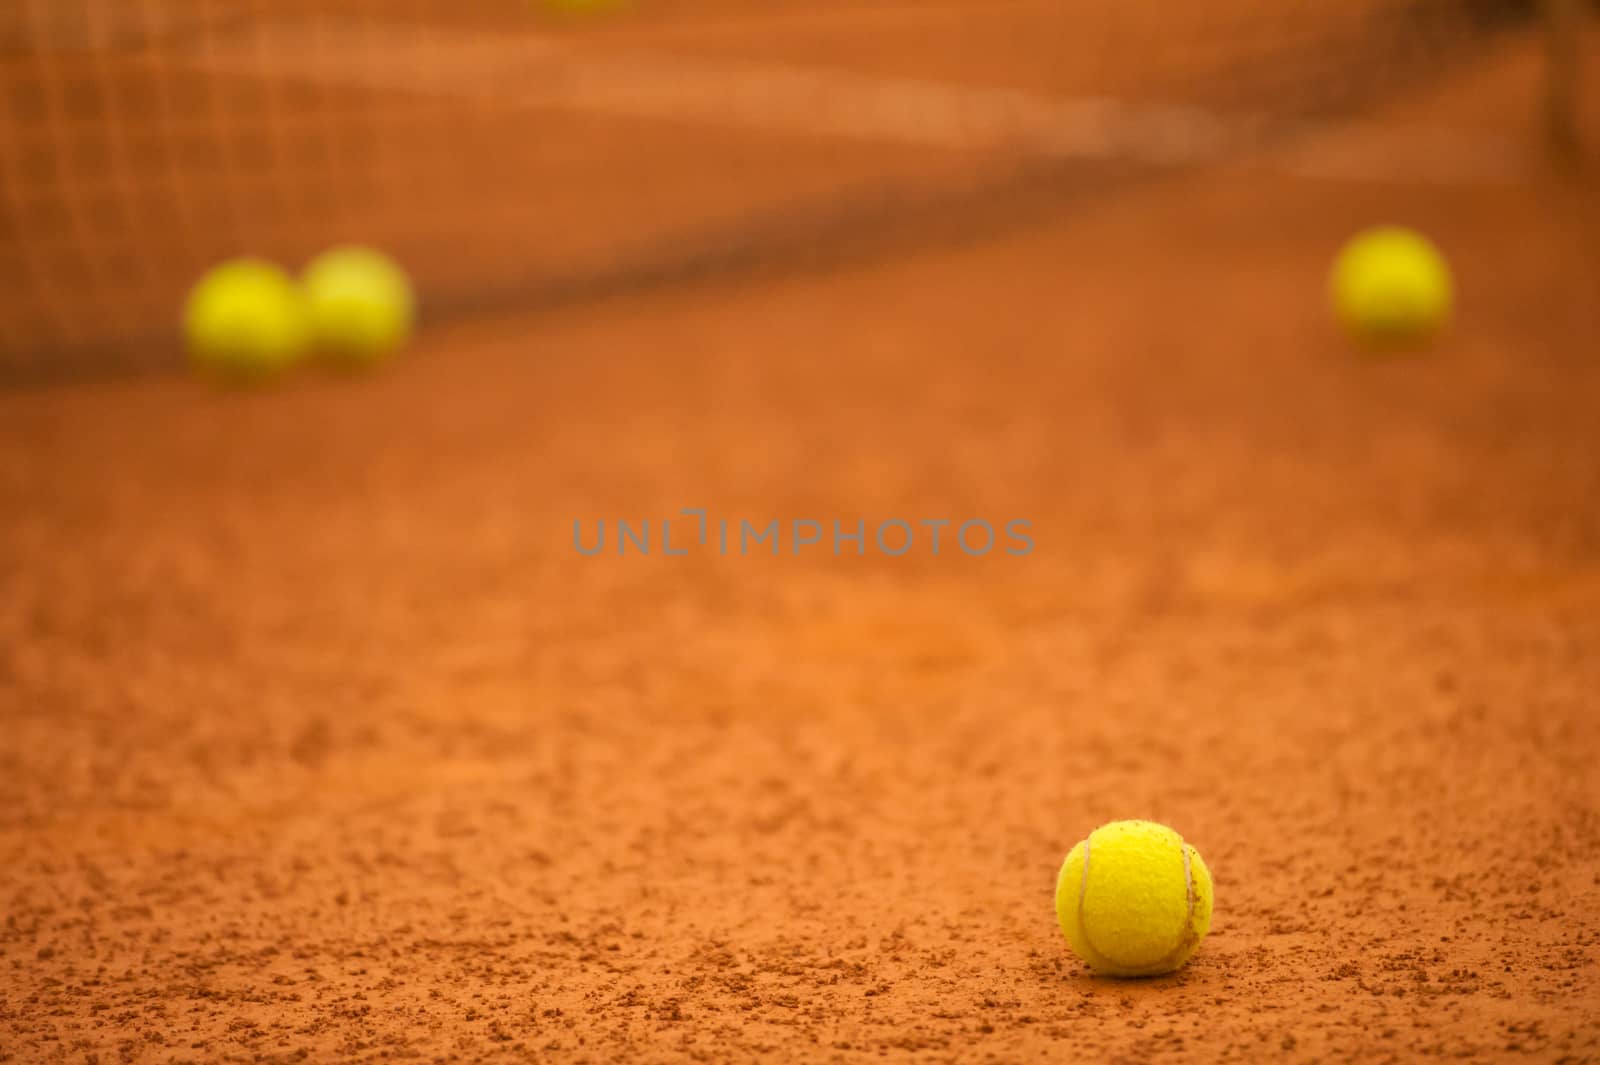 tennis balls still on the field